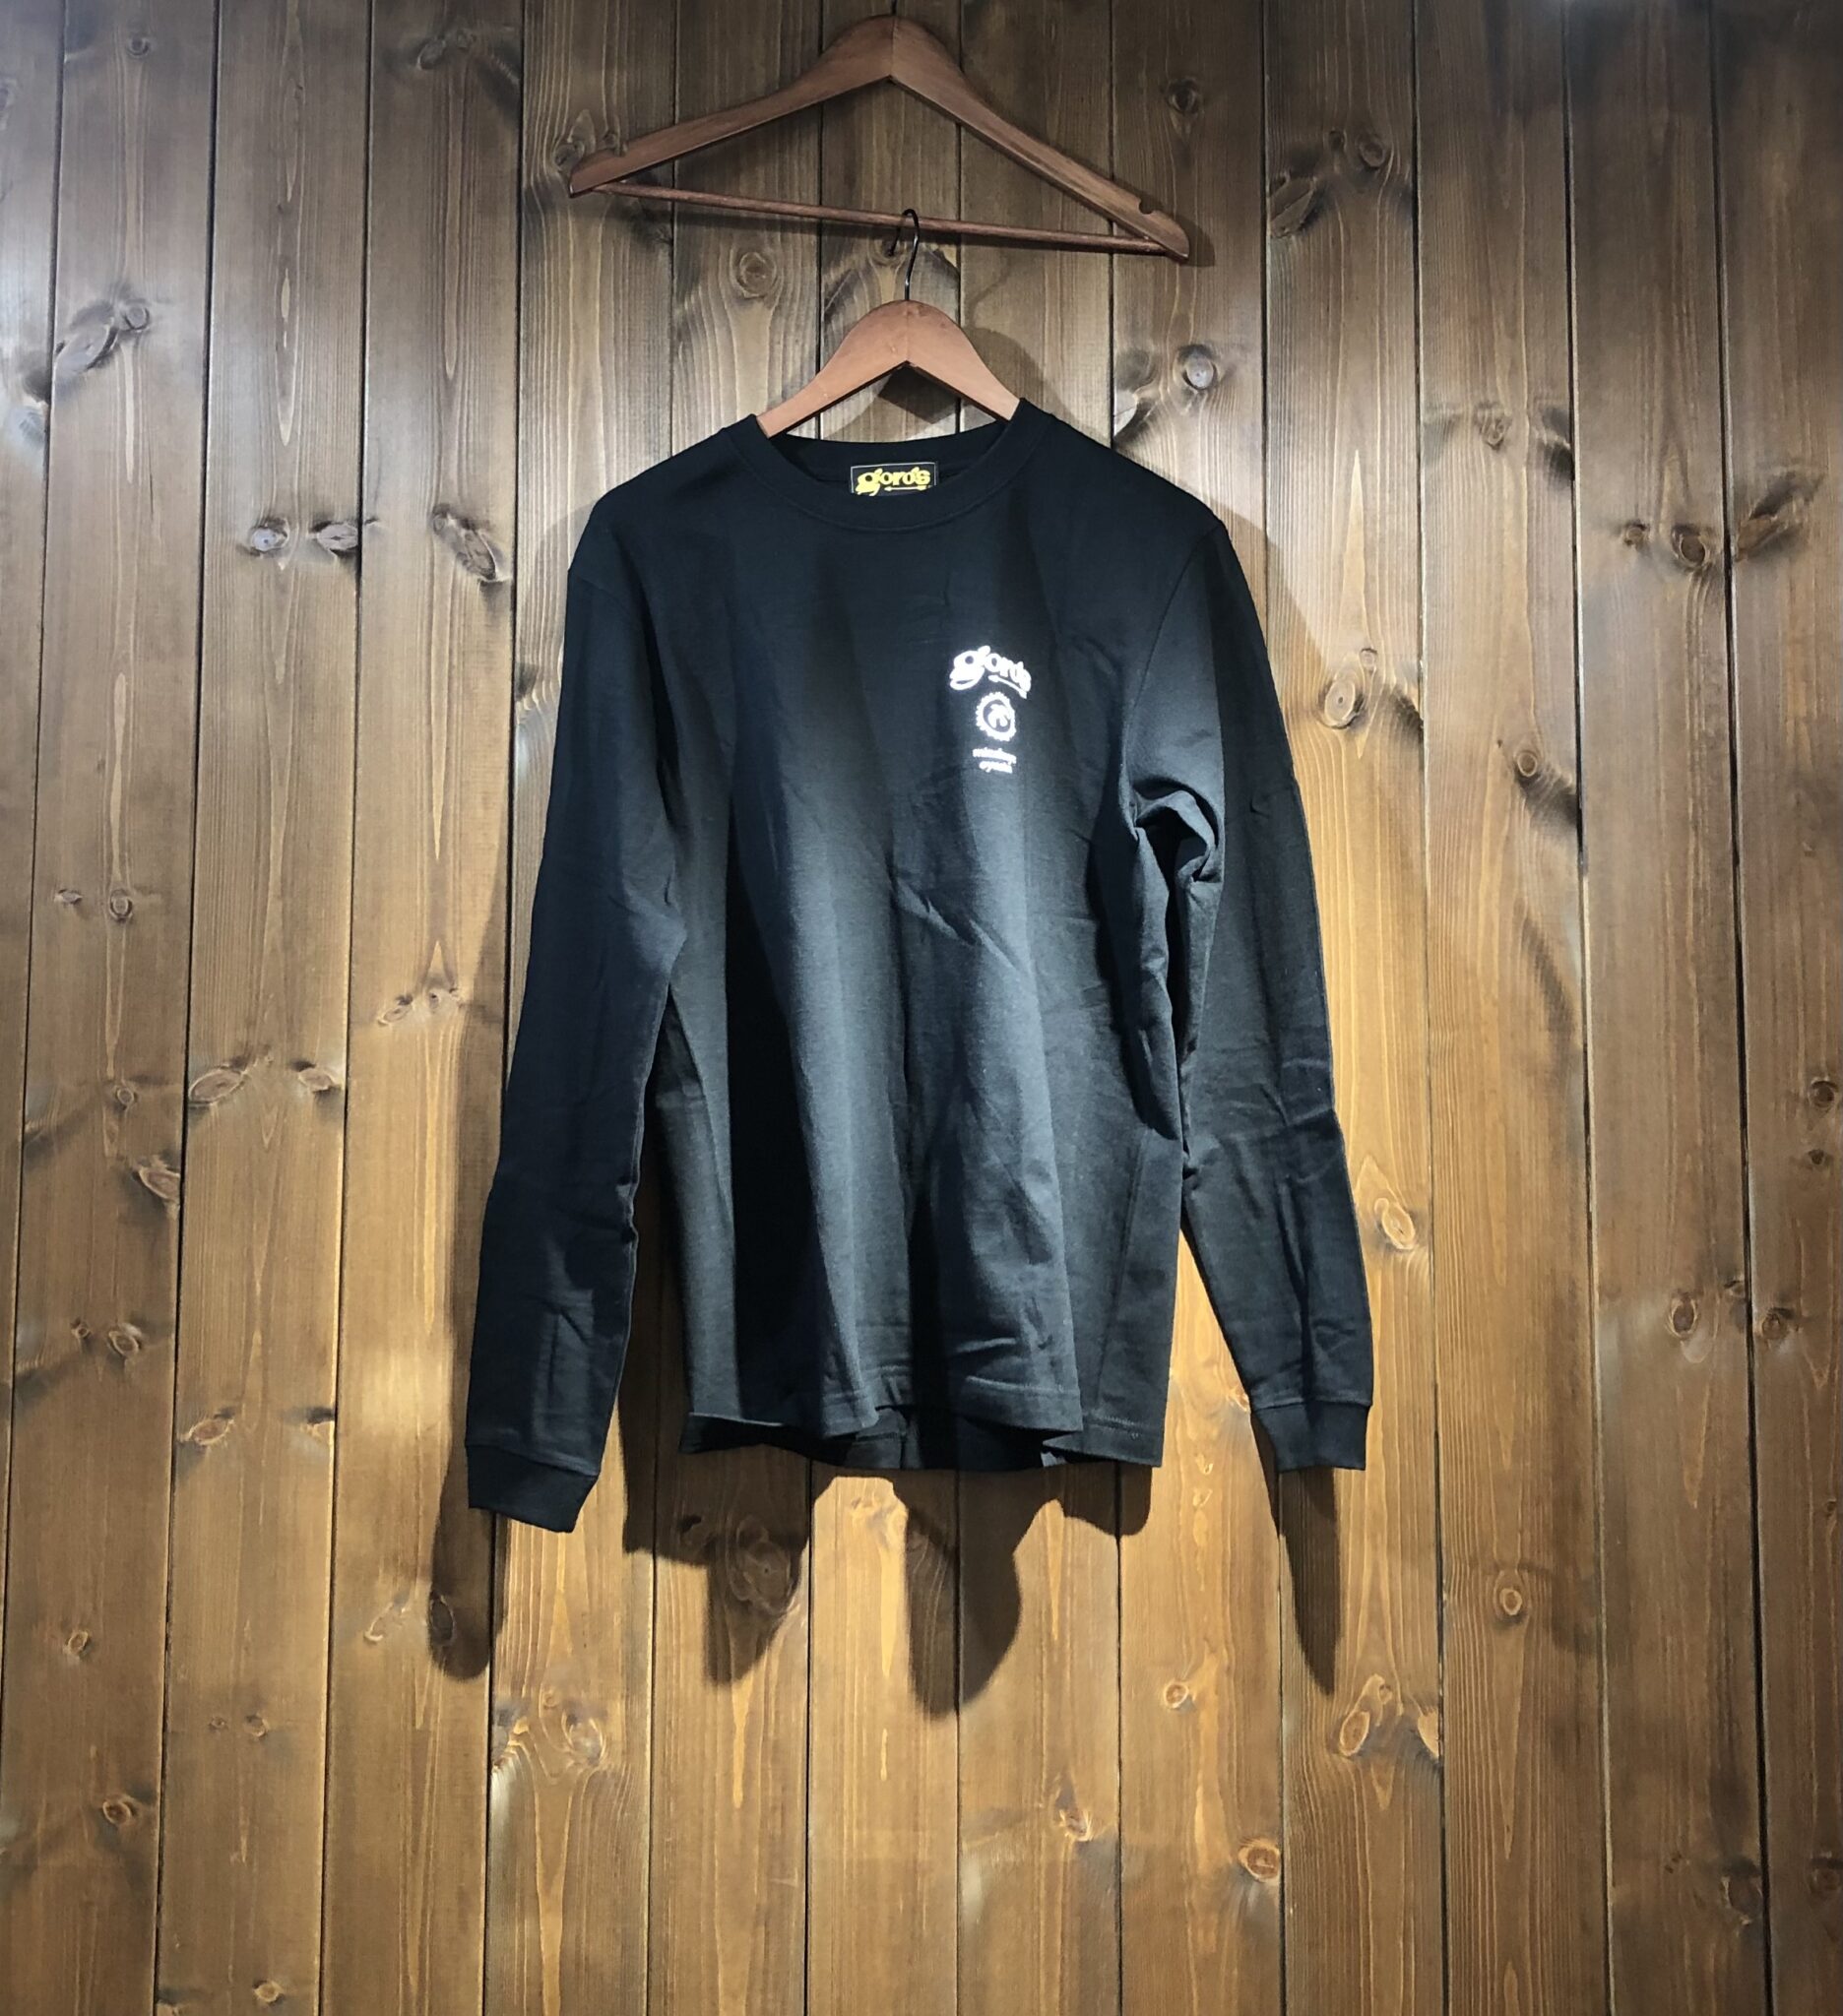 ゴローズロングTシャツ (黒) Tシャツ・ロンT - MONTE-CARLO 原宿